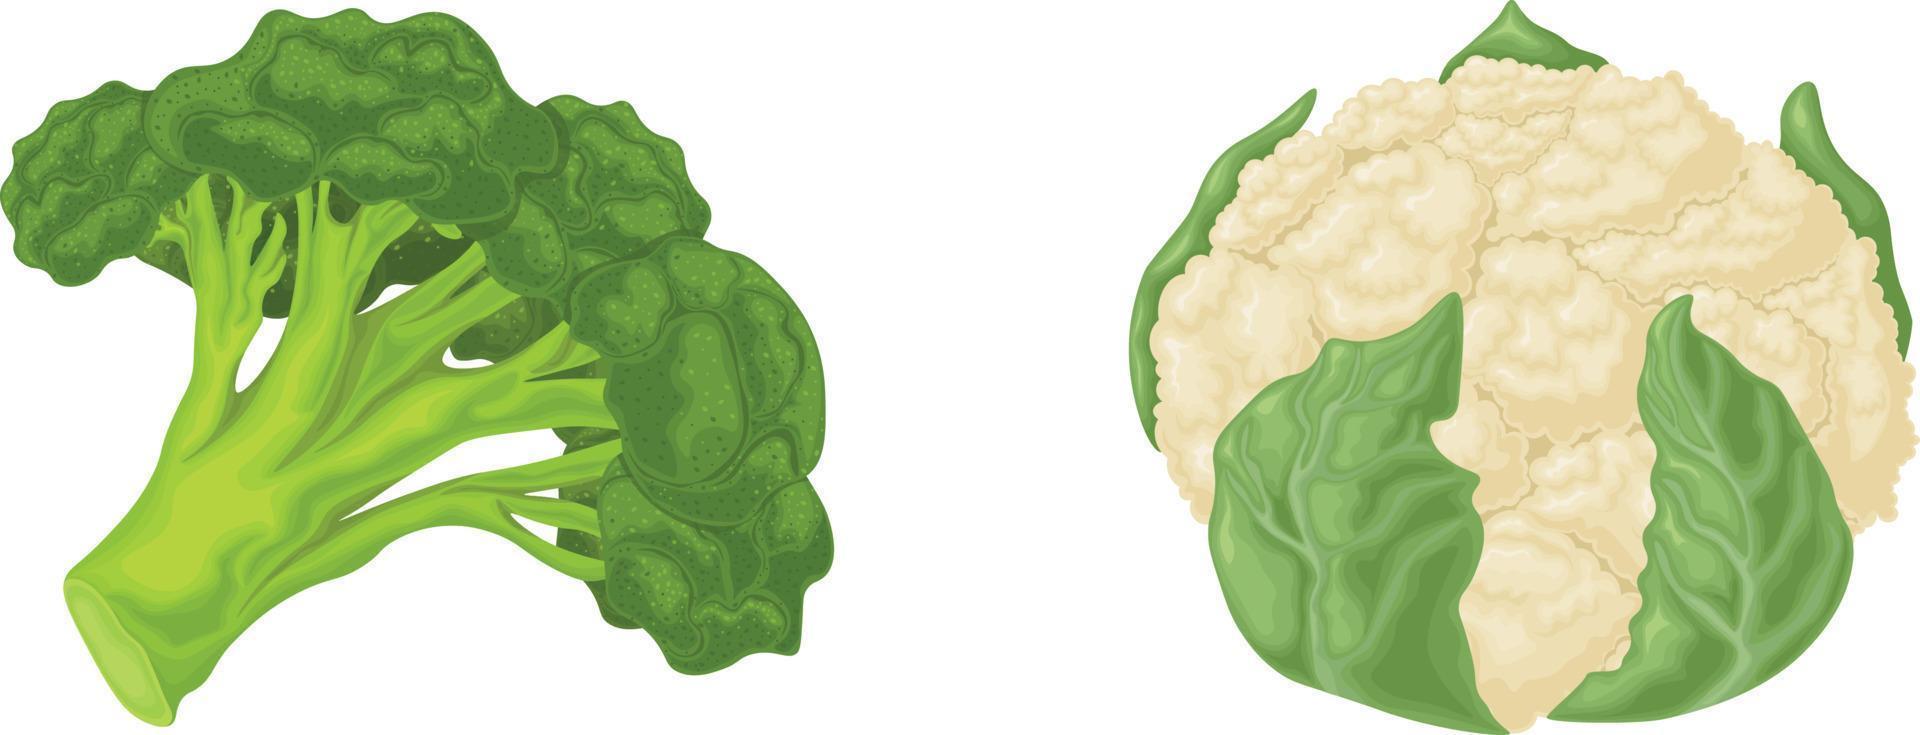 broccoli och blomkål. bild av mogen grönsaker sådan som broccoli och blomkål. vegetarian organisk mat. vektor illustration isolerat på en vit bakgrund